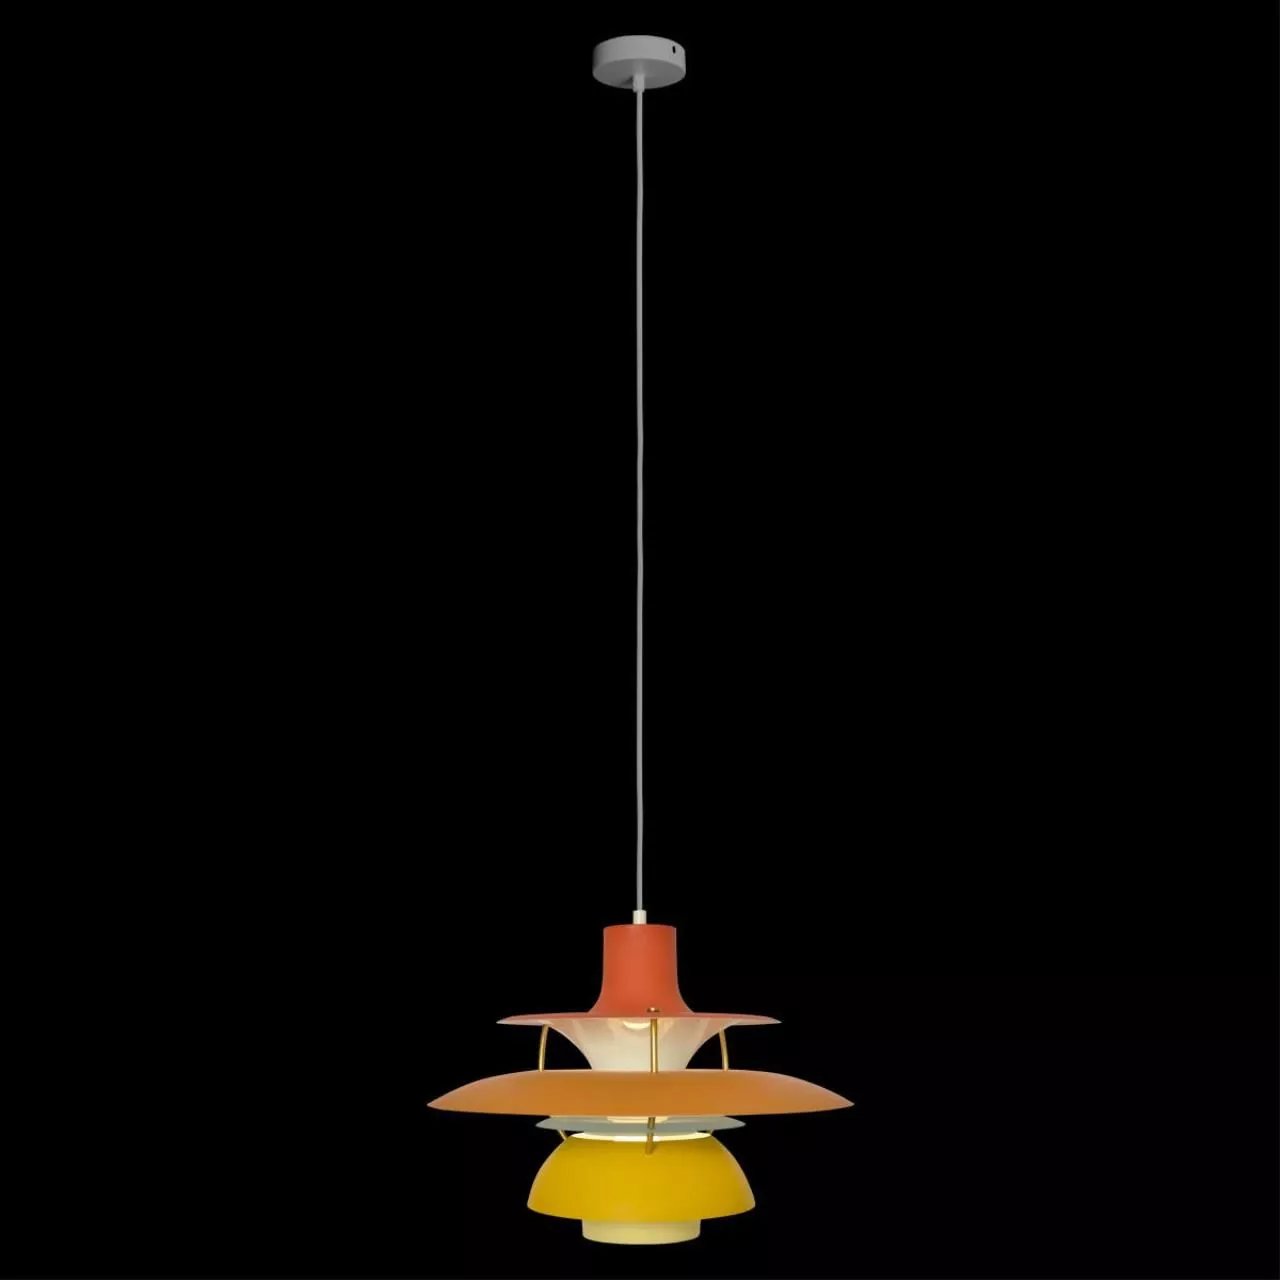 Подвесной светильник Loft it Floret 10113 Orange